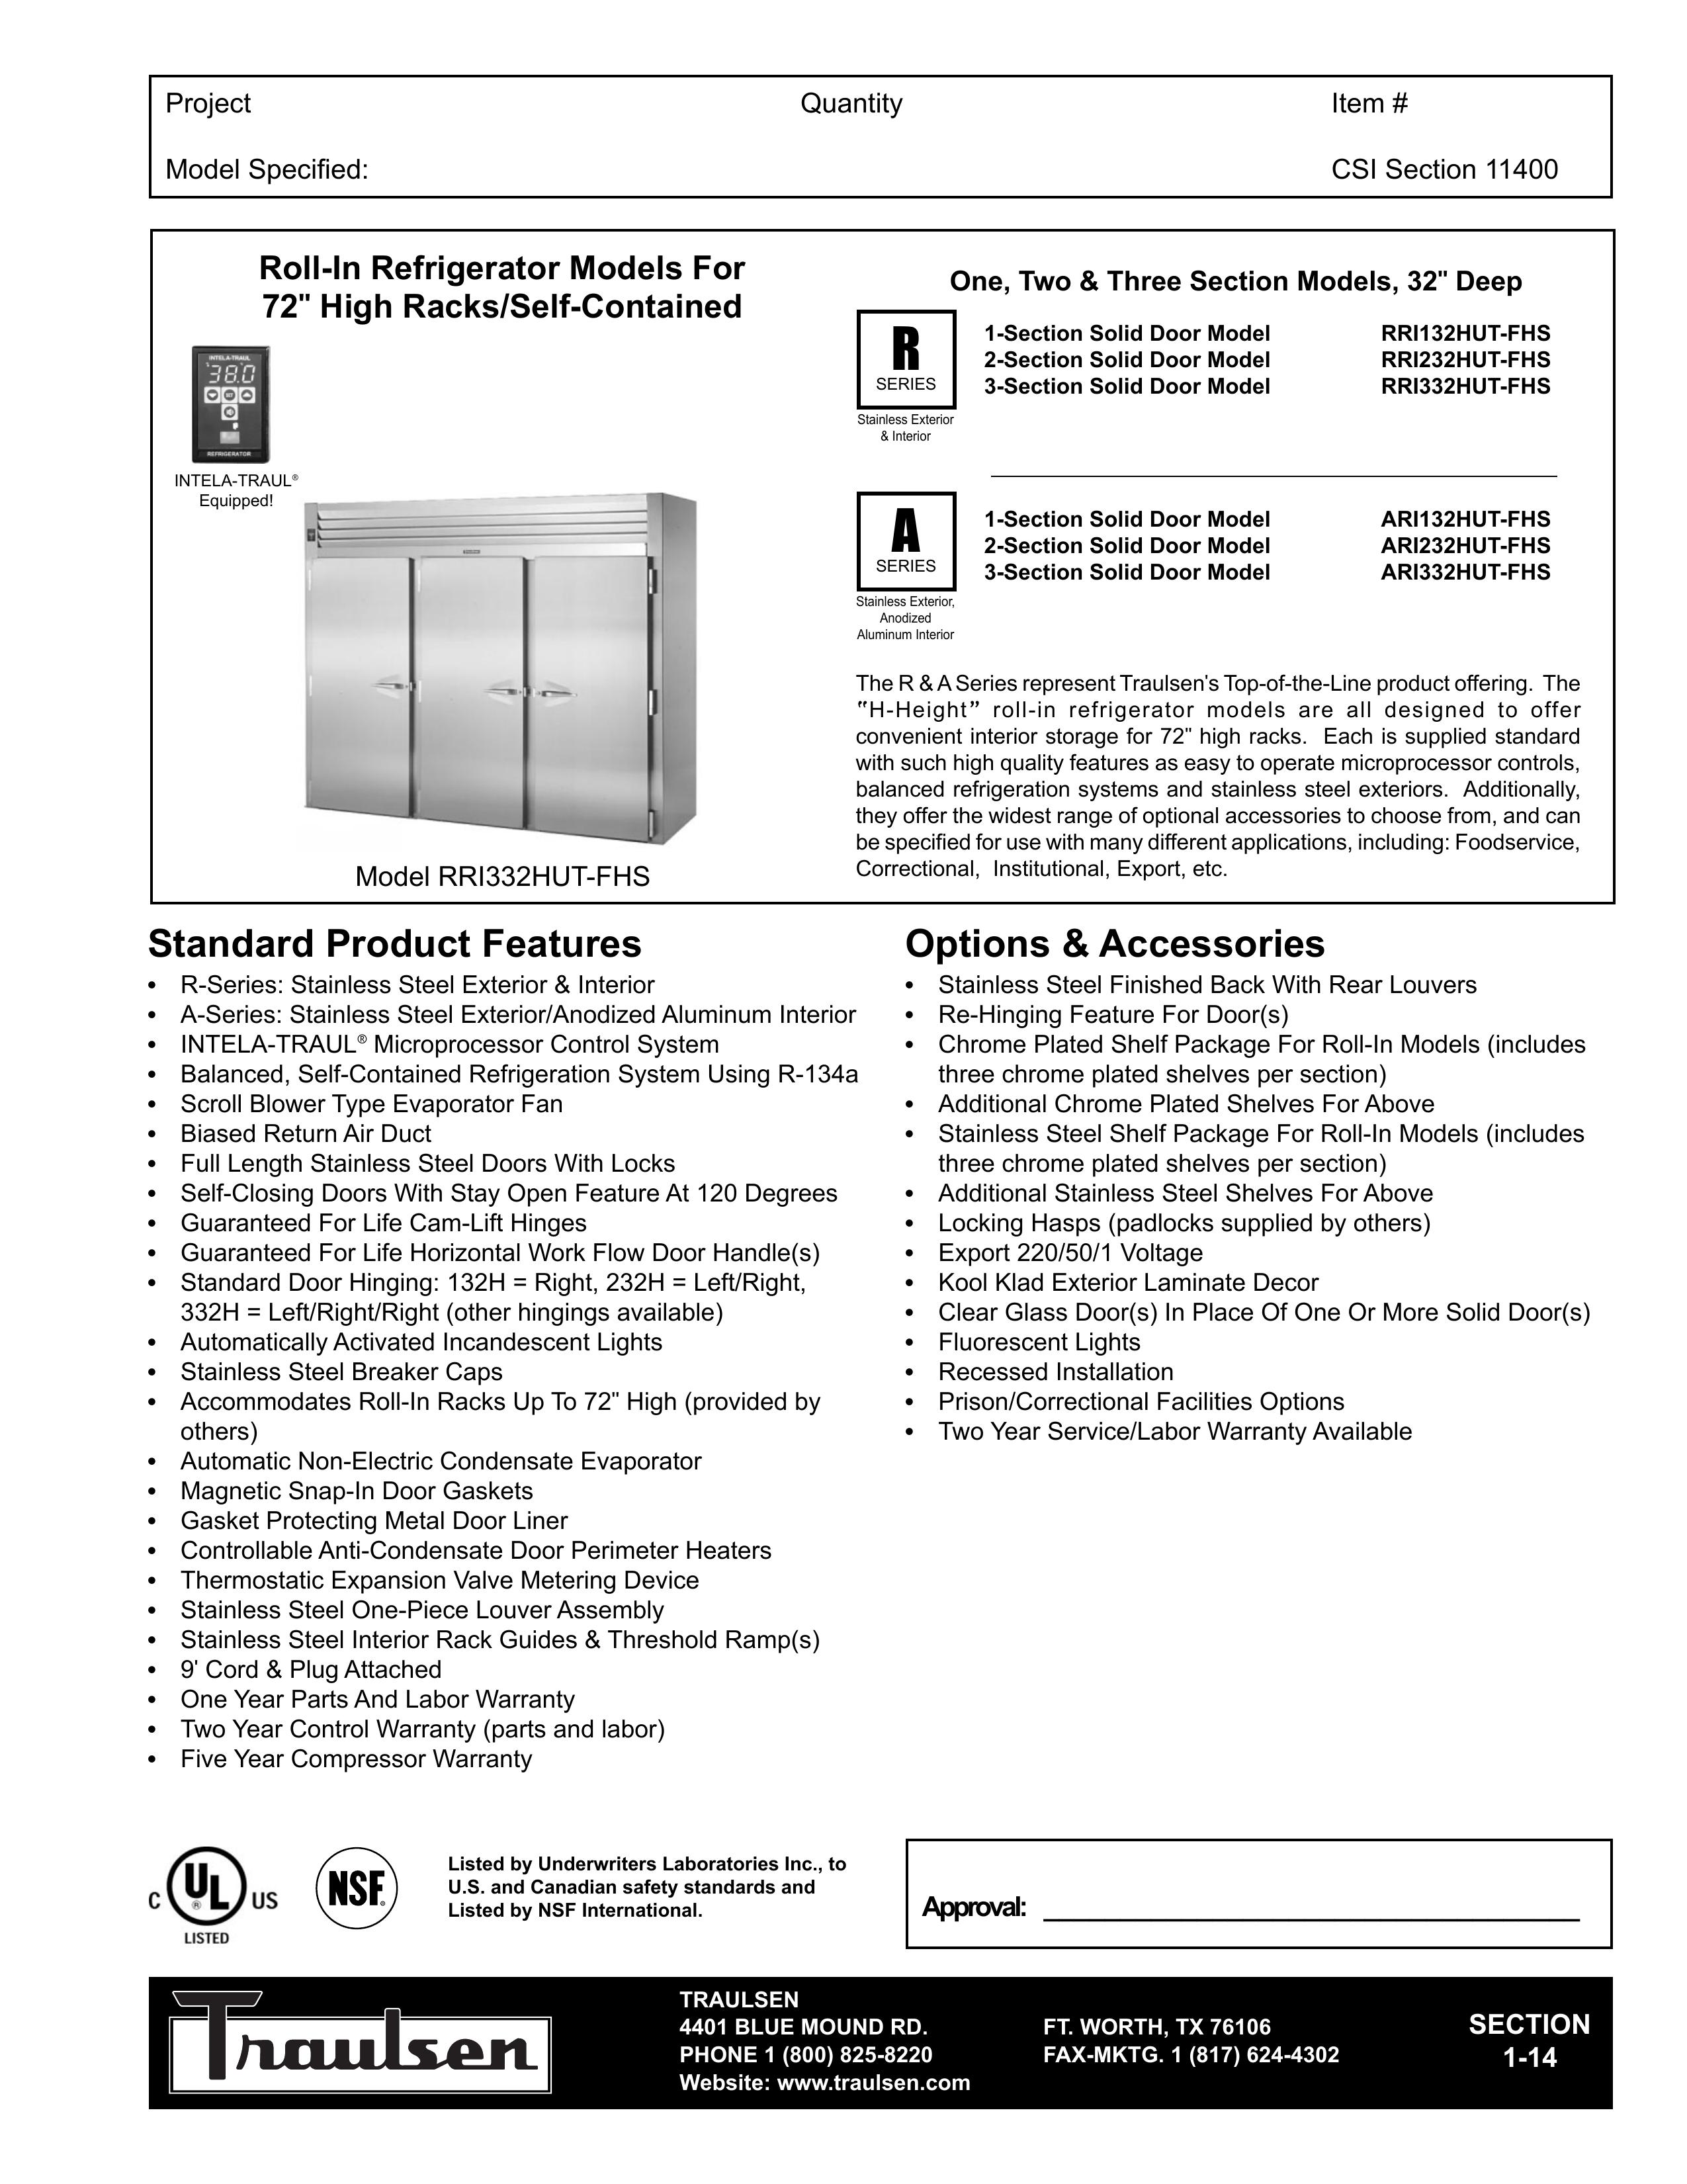 Traulsen ARI132HUT-FHS Refrigerator User Manual